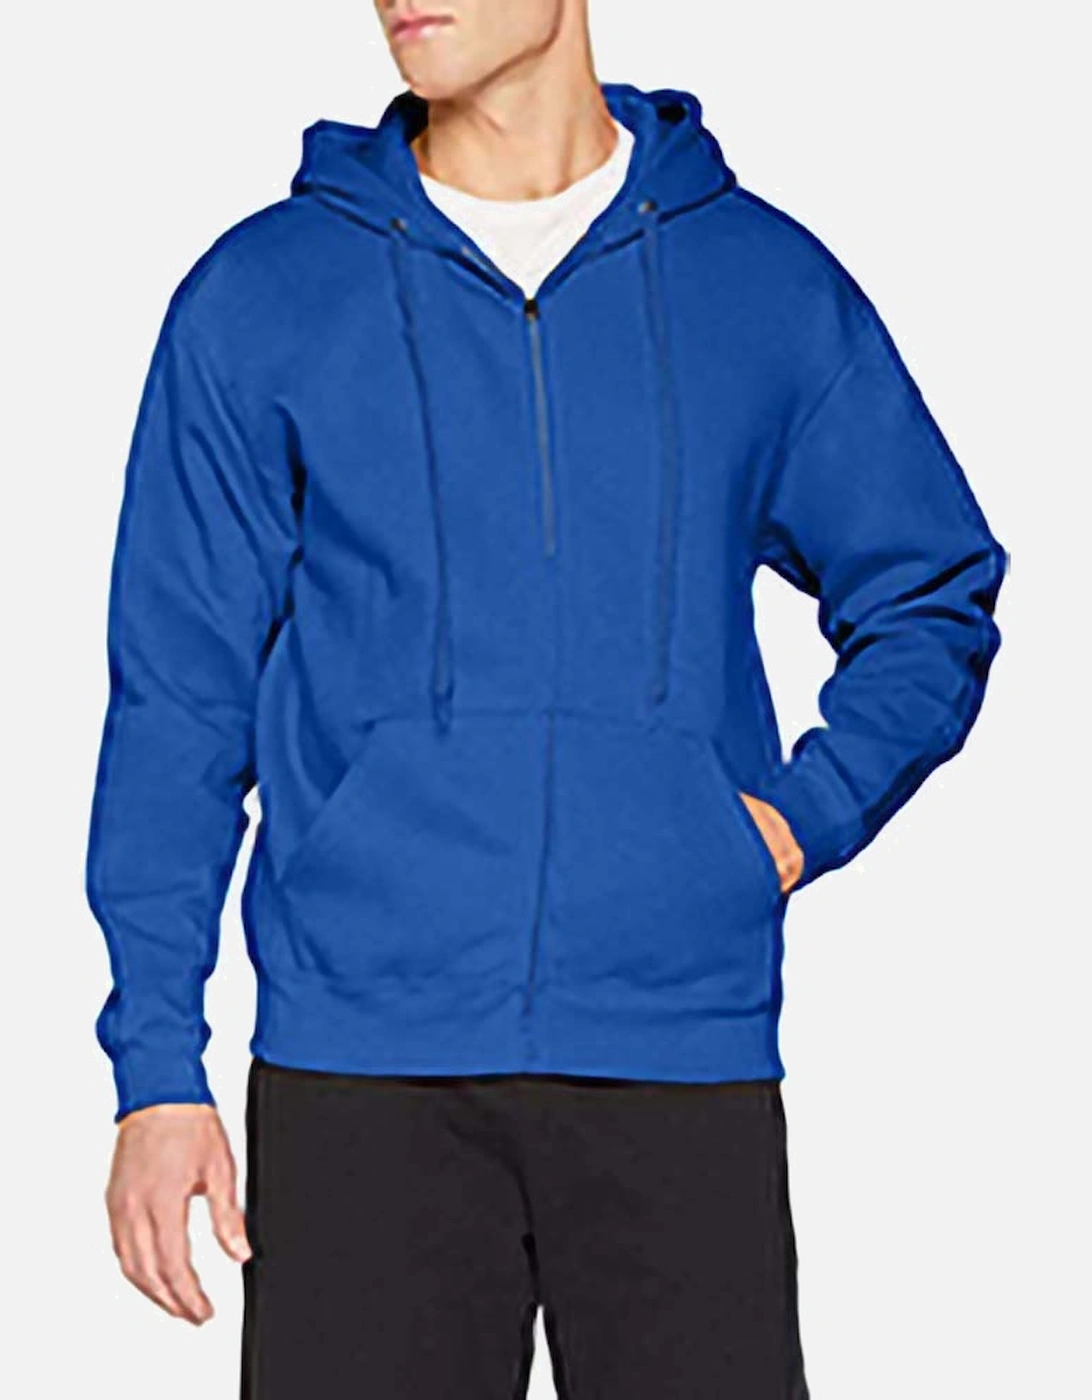 Mens Premium 70/30 Hooded Zip-Up Sweatshirt / Hoodie